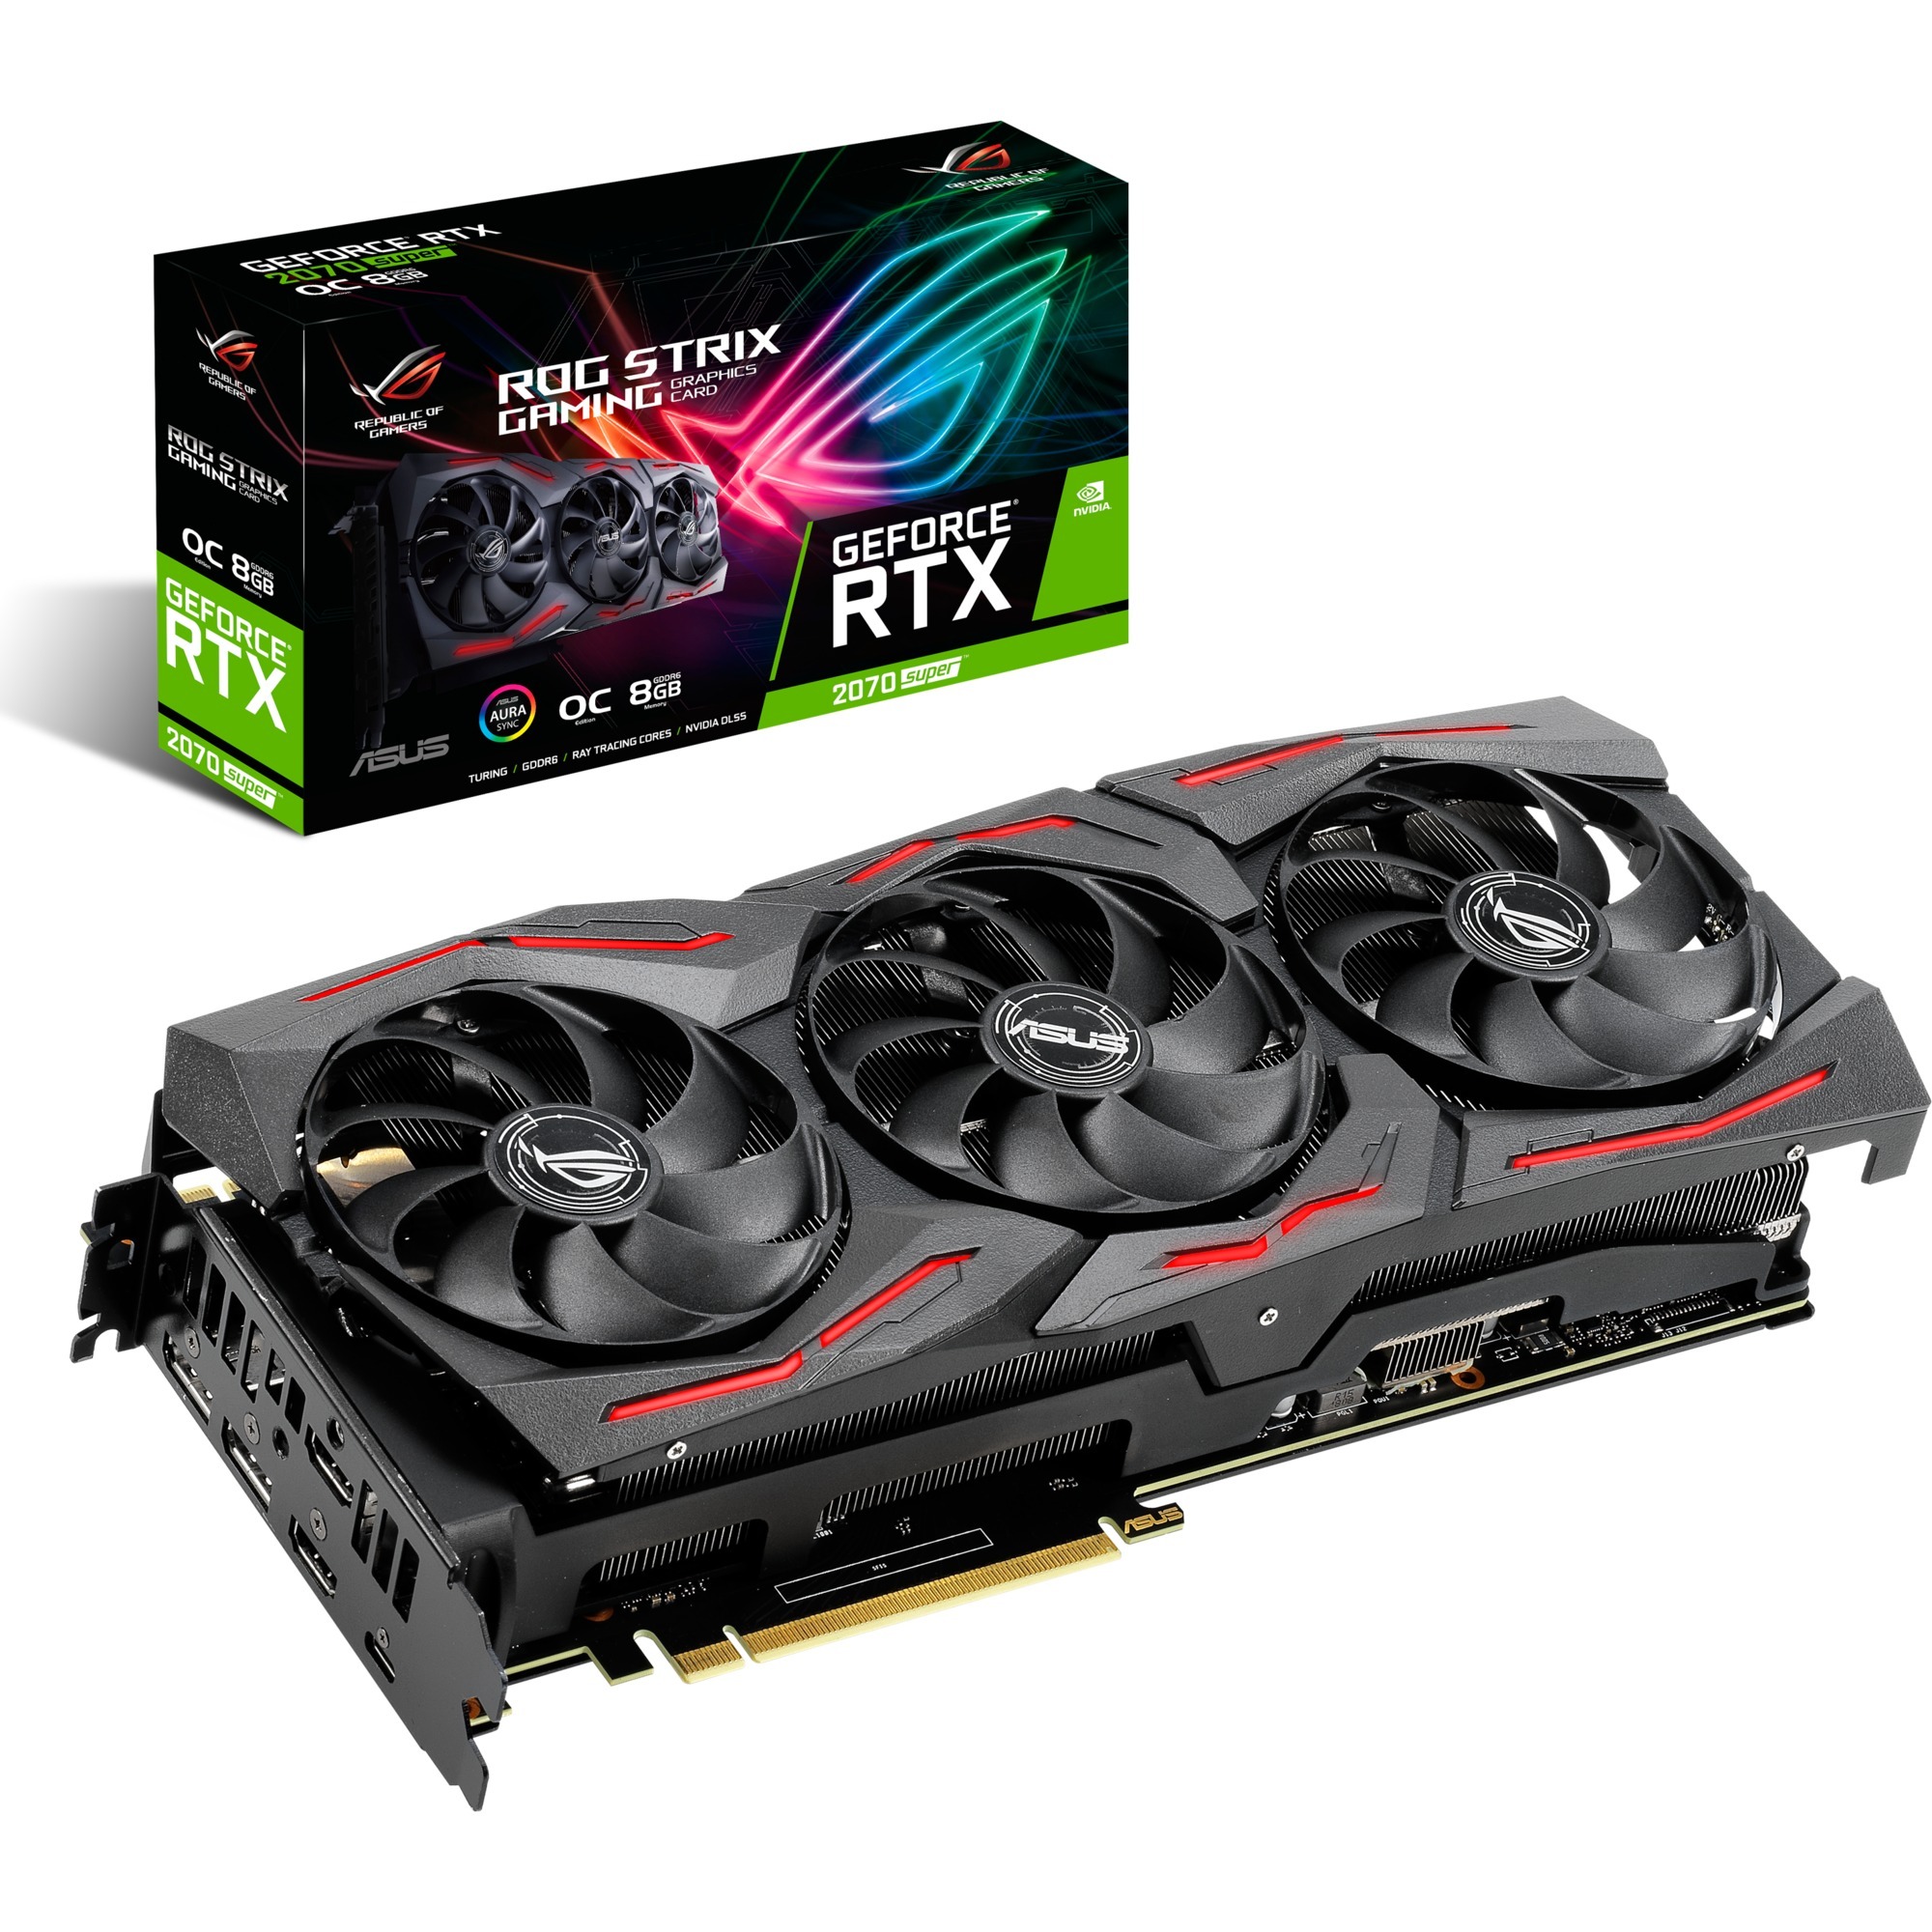 GeForce RTX 2070 SUPER ROG STRIX OC GAMING, Grafikkarte (2x DisplayPort, 2x HDMI, 1x USB-C)